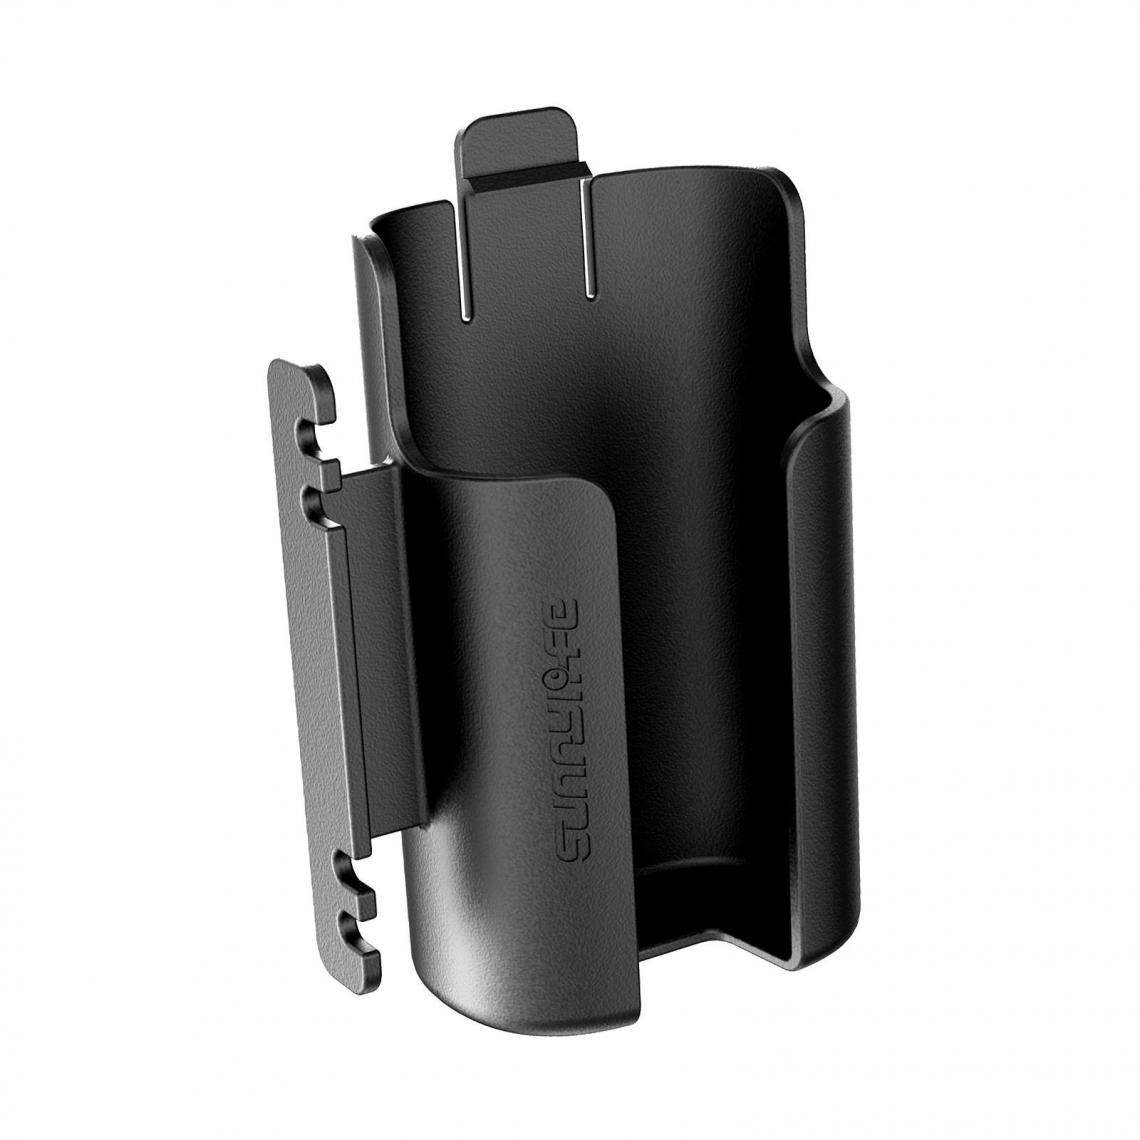 marque generique - Batterie clip cas shell câble enrouleur titulaire - Accessoires et pièces